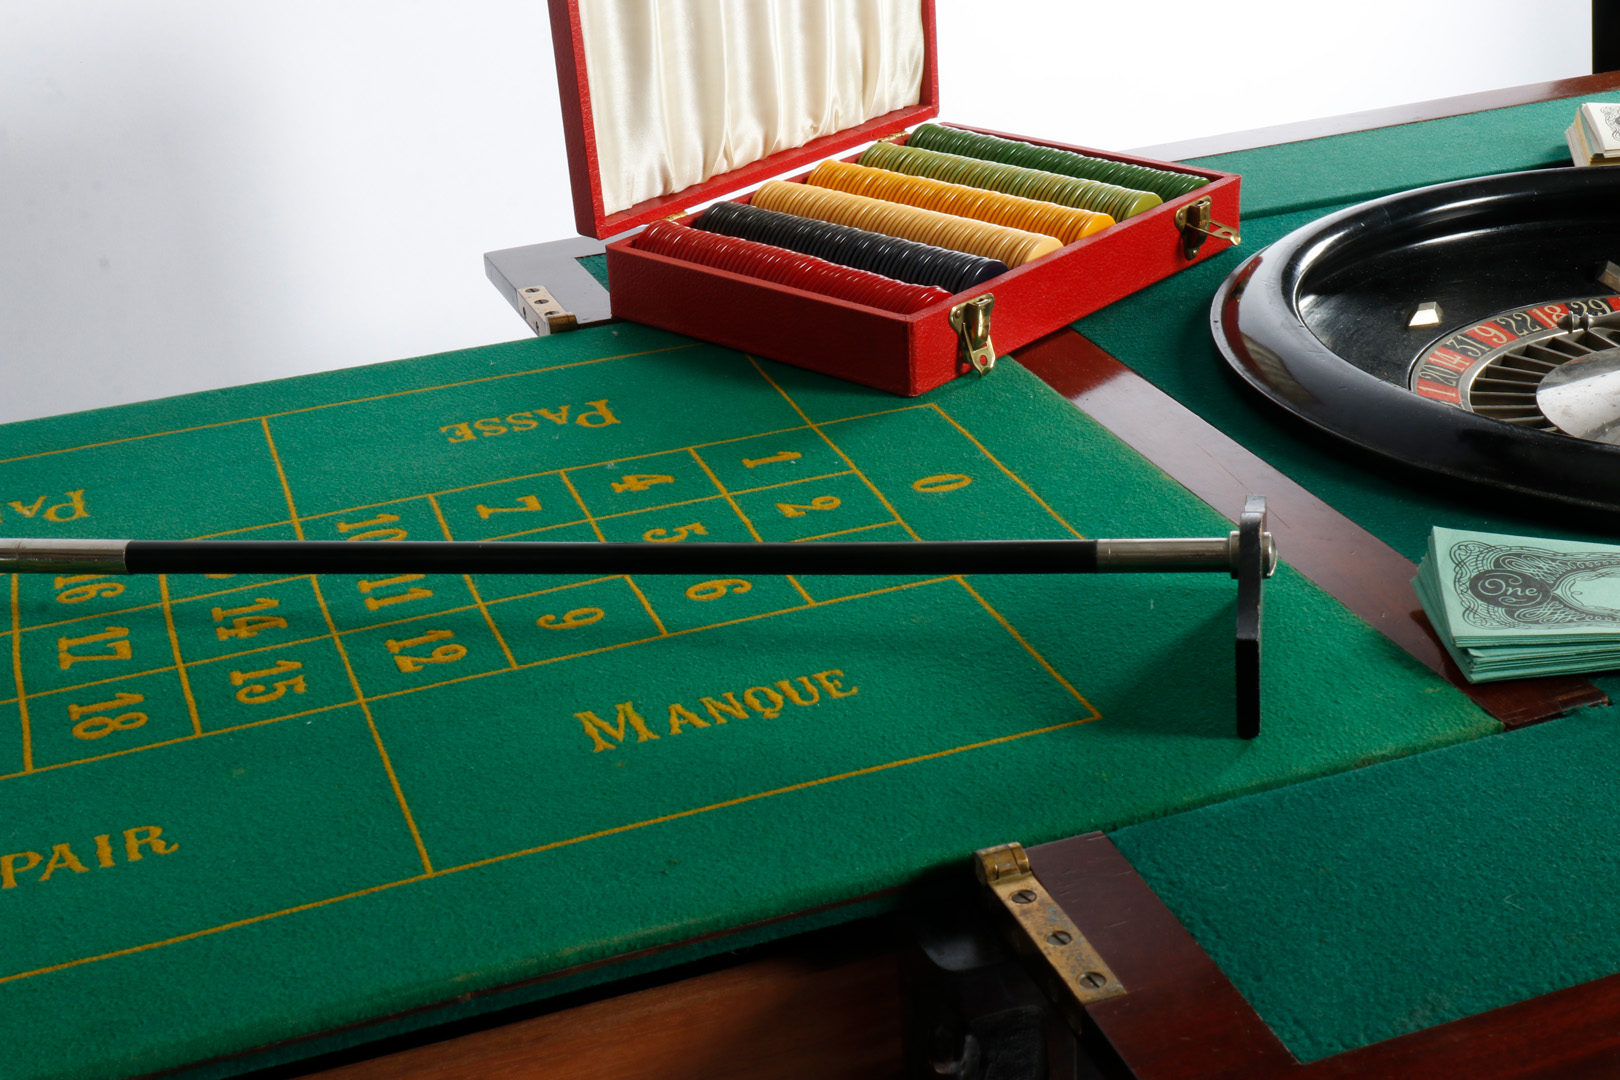 Großer Mahagoni-Spieltisch, aufklappbar, für Roulette-Spiel, grün befilzt, mit Drehteller, Kugel, - Image 6 of 7